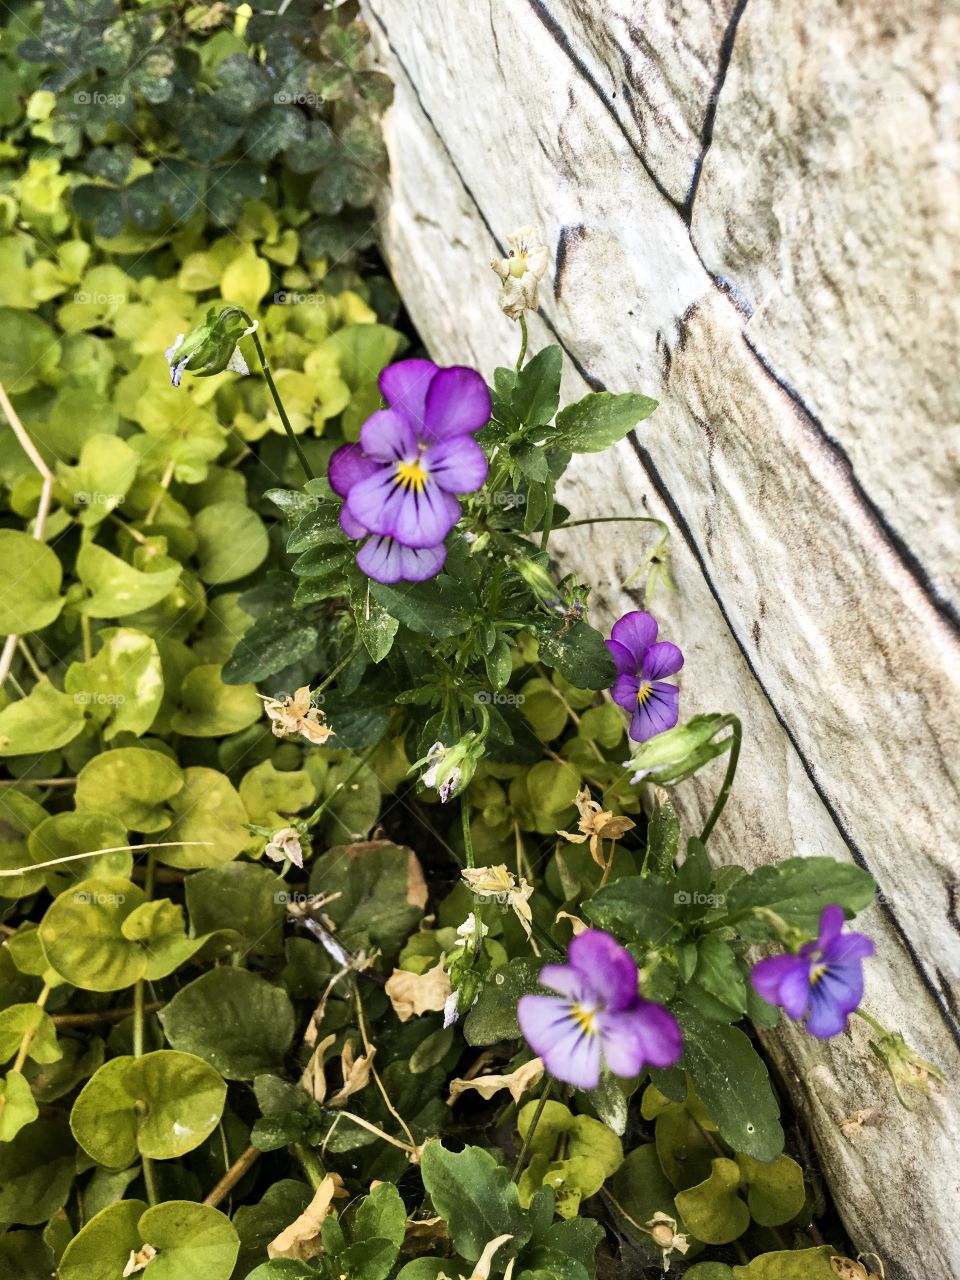 The summer purple gardening flowers background. 